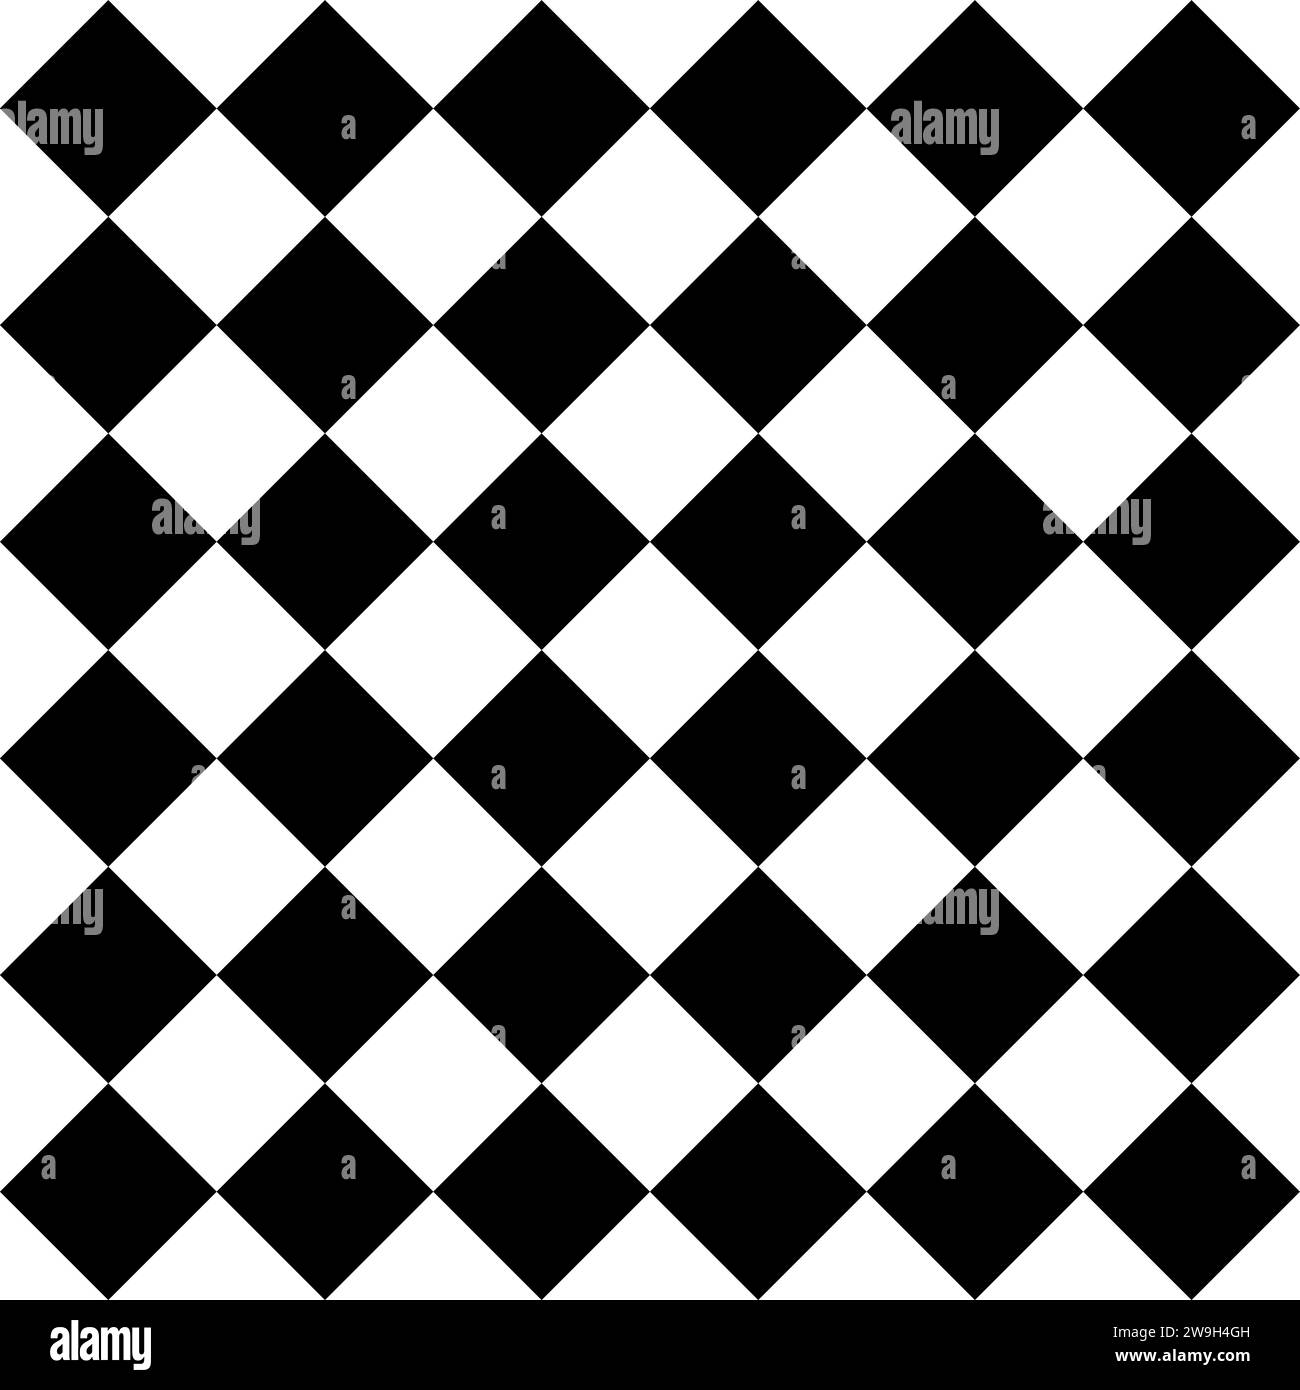 Prüfmuster - quadratische schwarze und weiße Fliesen - nahtloser, wiederholbarer Hintergrund mit Musterstruktur Stock Vektor